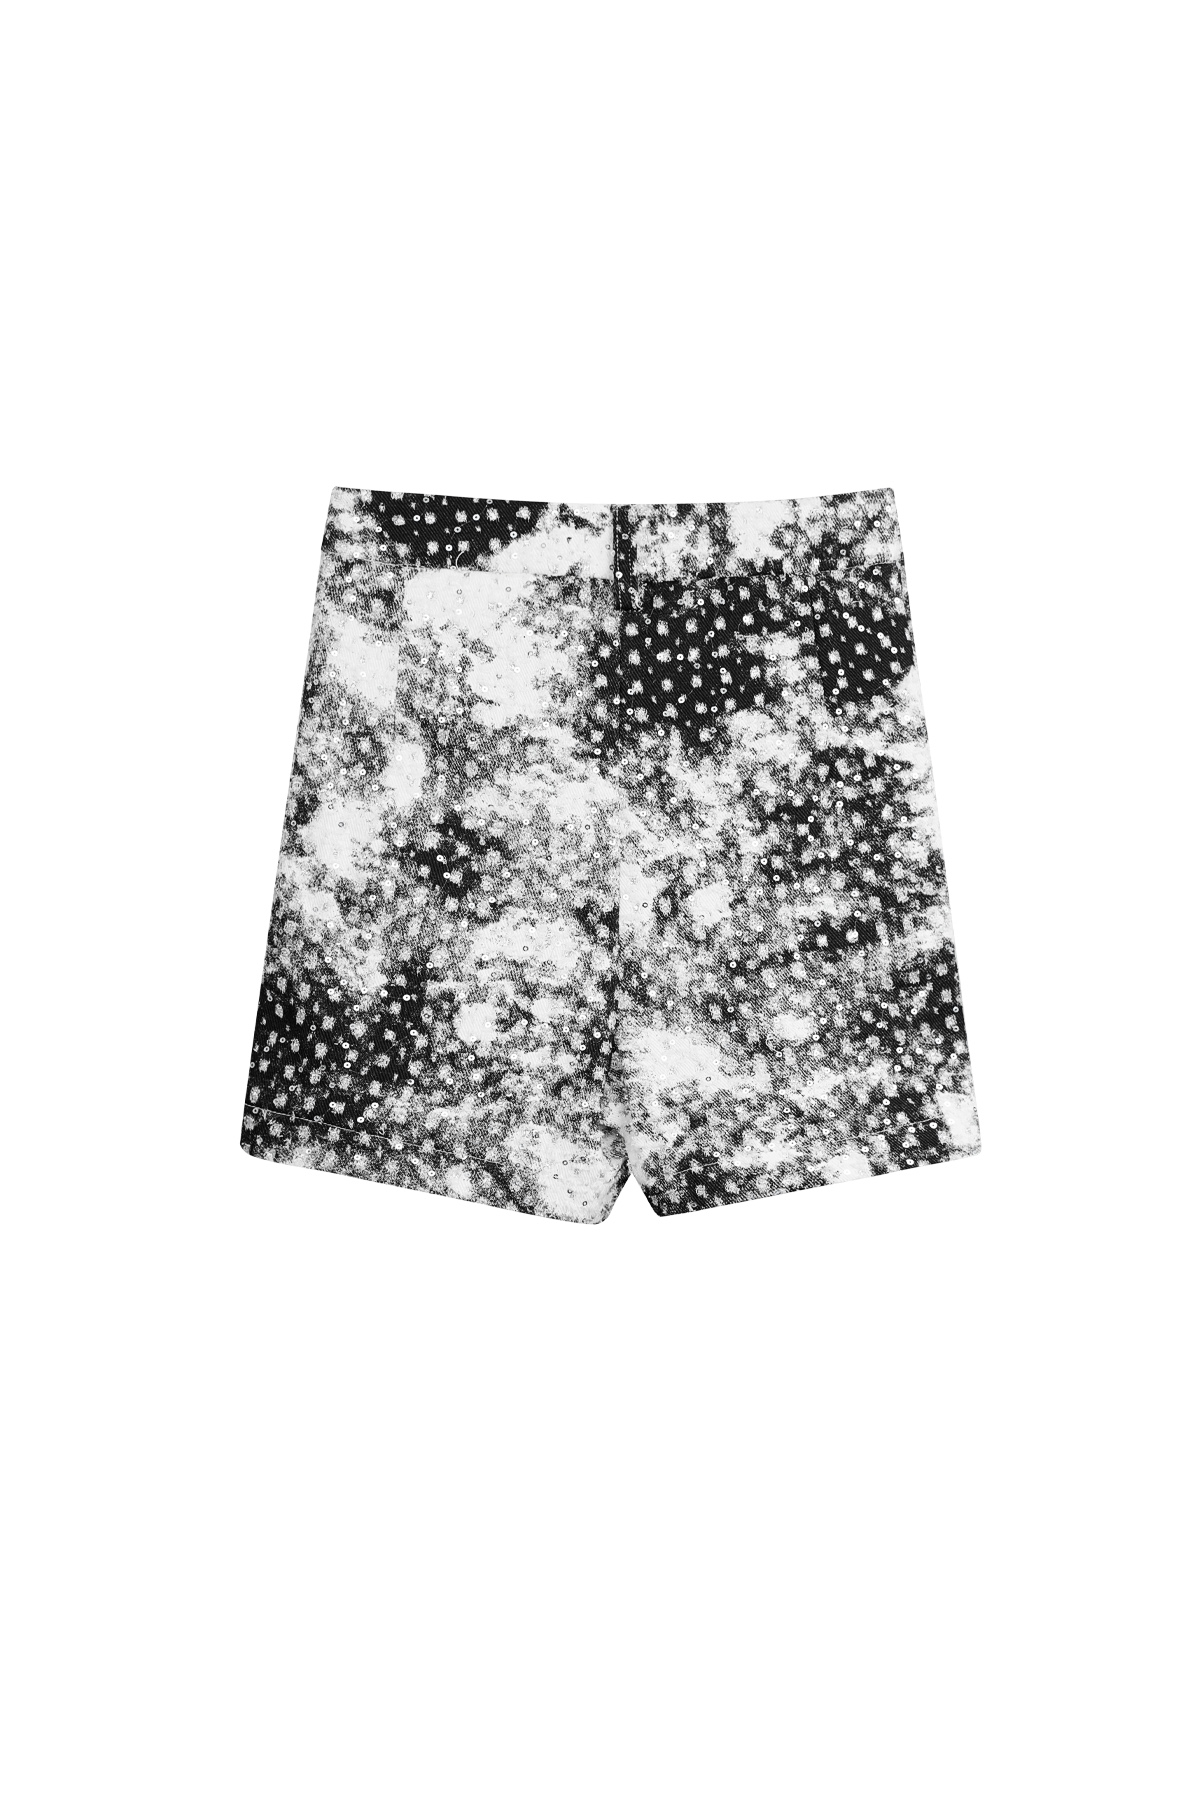 Short vlekken met glitter - zwart wit - S Afbeelding8